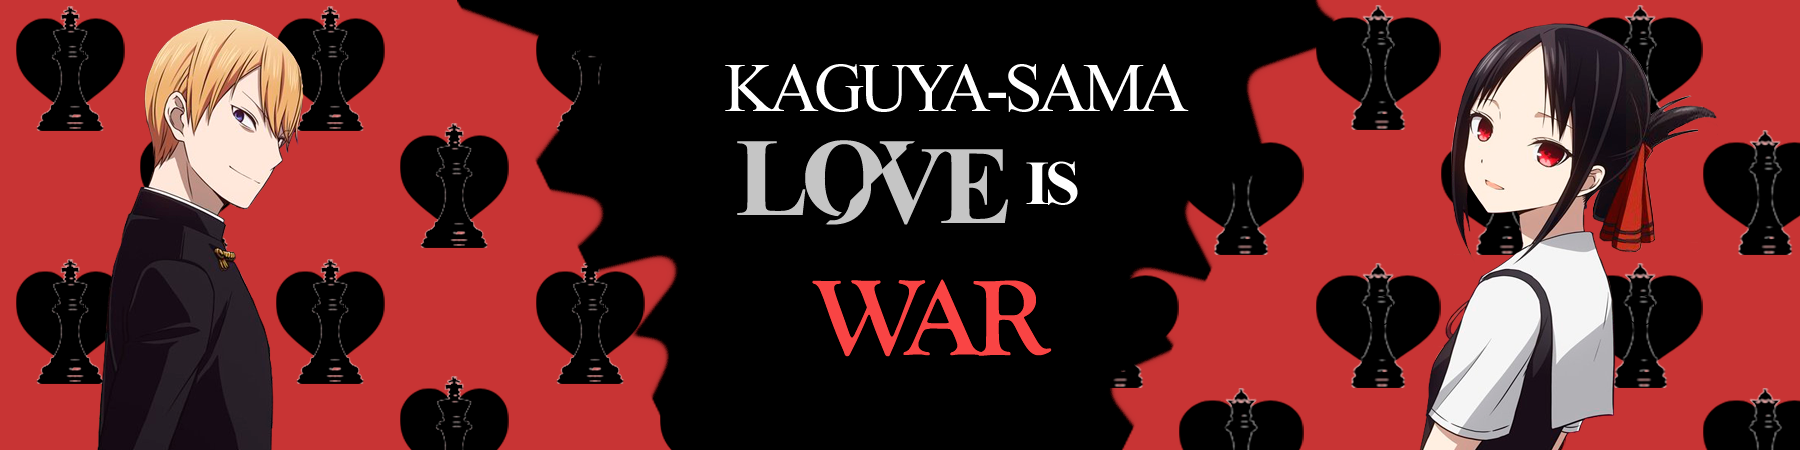 Kaguya sama love is war - Personagens e relacionamentos sinceros 